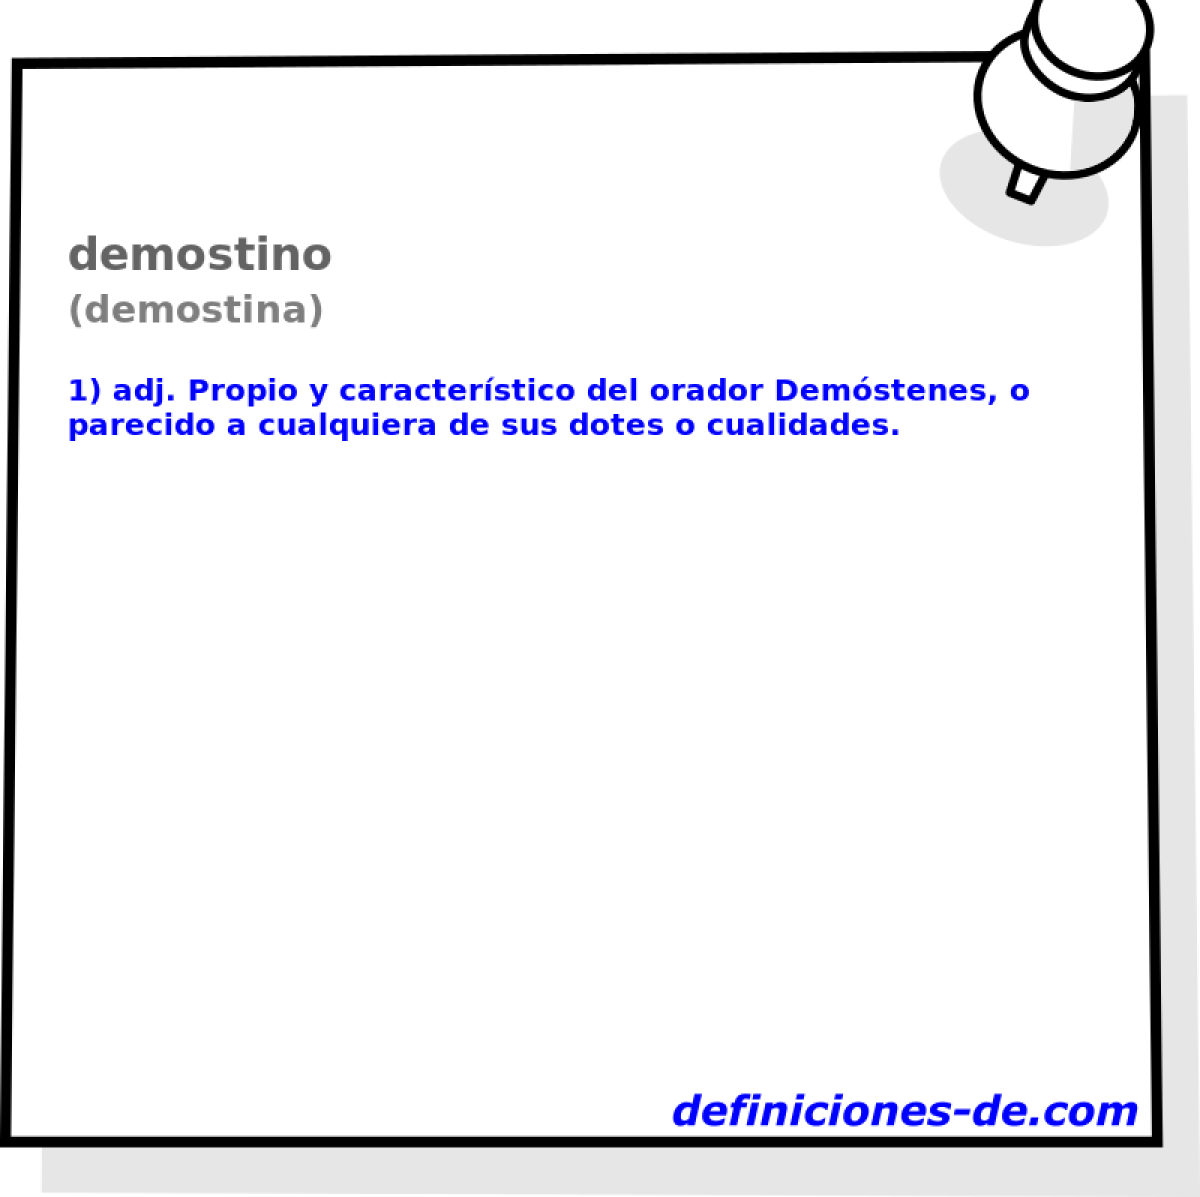 demostino (demostina)